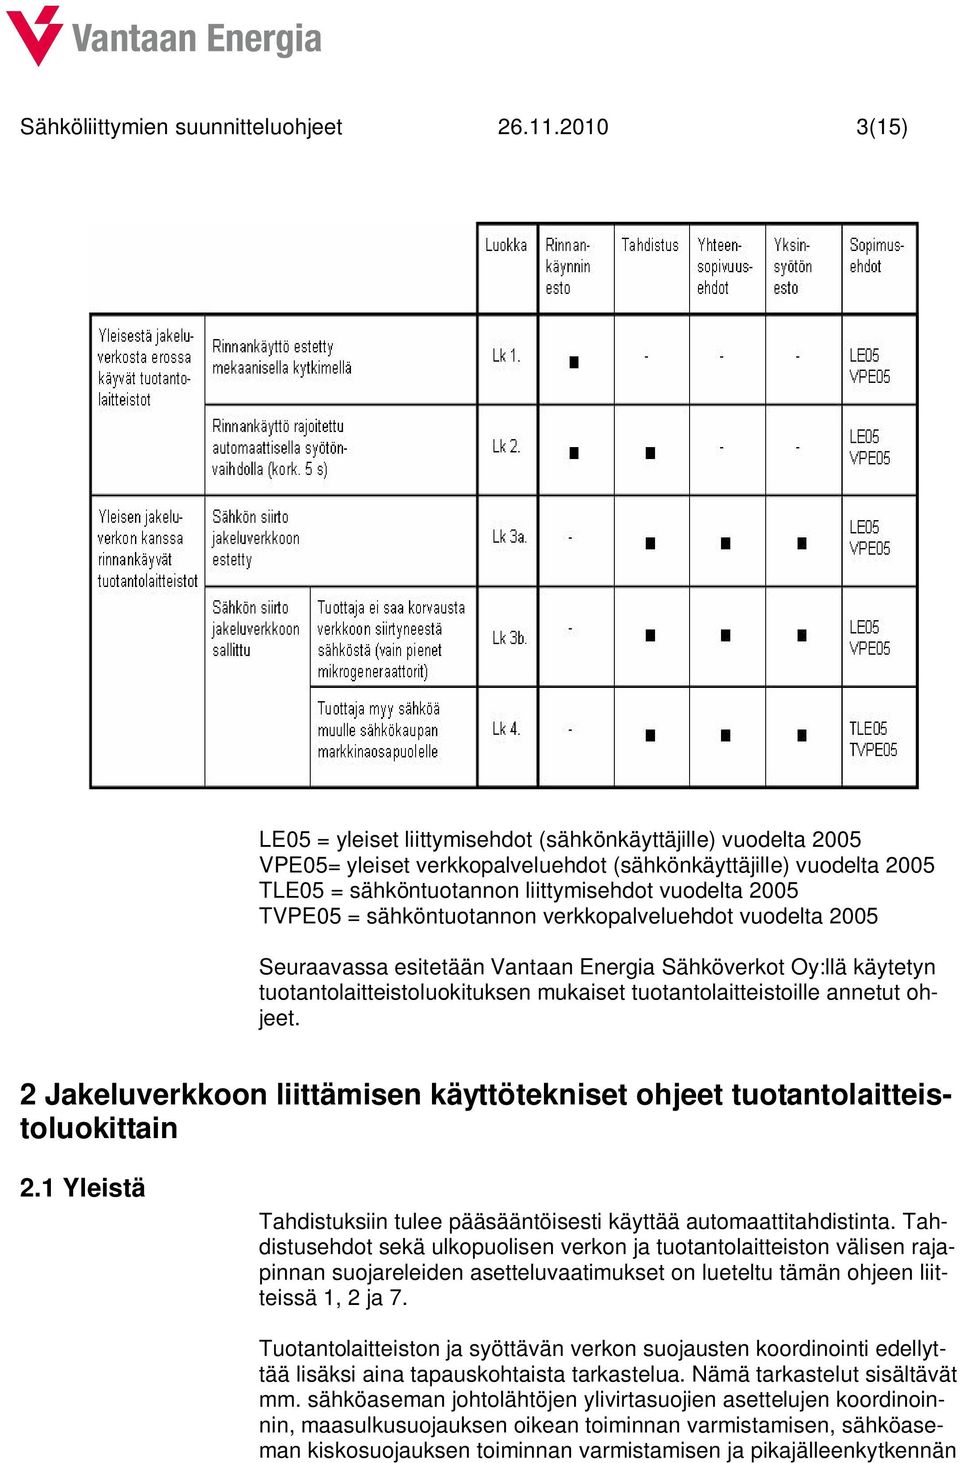 TVPE05 = sähköntuotannon verkkopalveluehdot vuodelta 2005 Seuraavassa esitetään Vantaan Energia Sähköverkot Oy:llä käytetyn tuotantolaitteistoluokituksen mukaiset tuotantolaitteistoille annetut